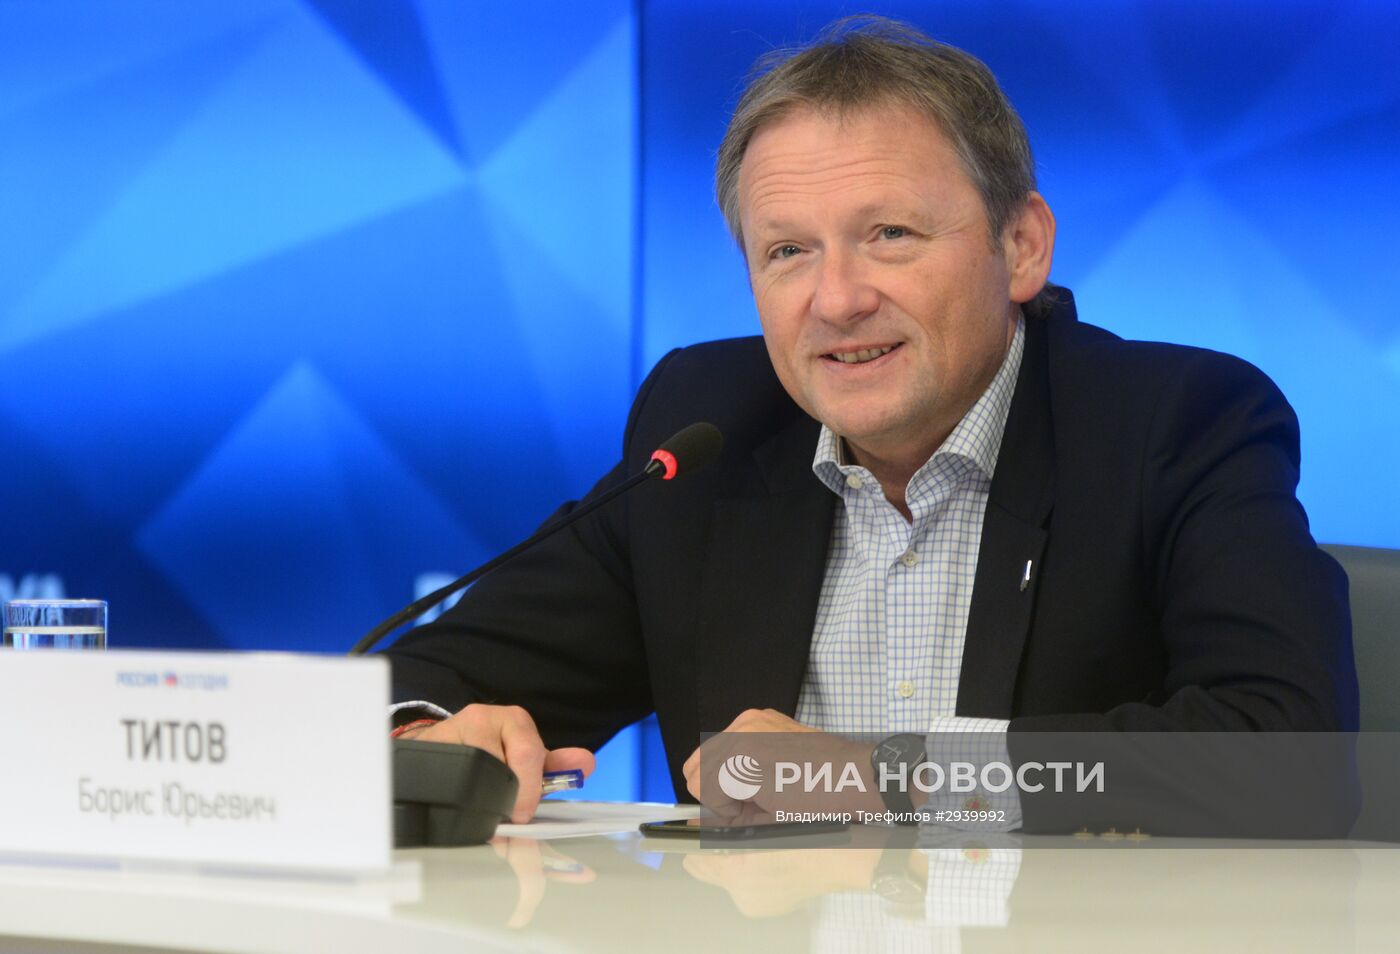 Пресс-конференция лидера Партии роста Б. Титова по итогам выборов